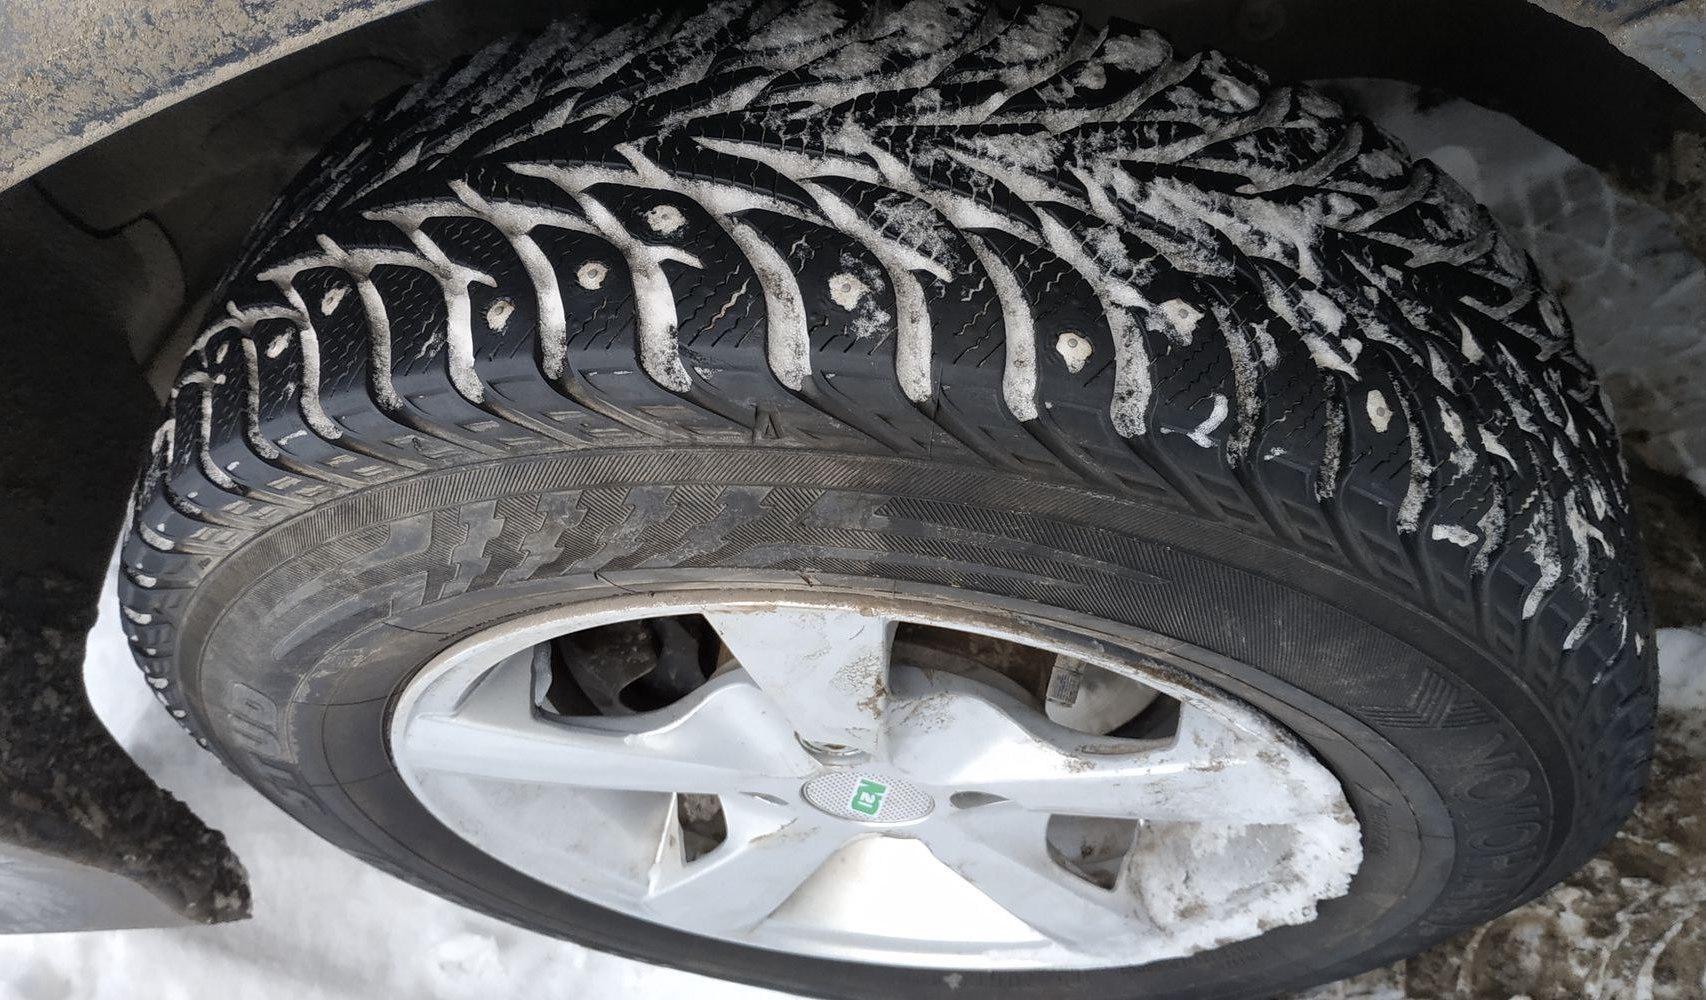 योकोहामा आइस गार्ड स्टड शीतकालीन टायरहरूको समीक्षा: तिनीहरू योकोहामा आइस गार्ड स्टड टायरहरूको बारेमा के भन्छन्